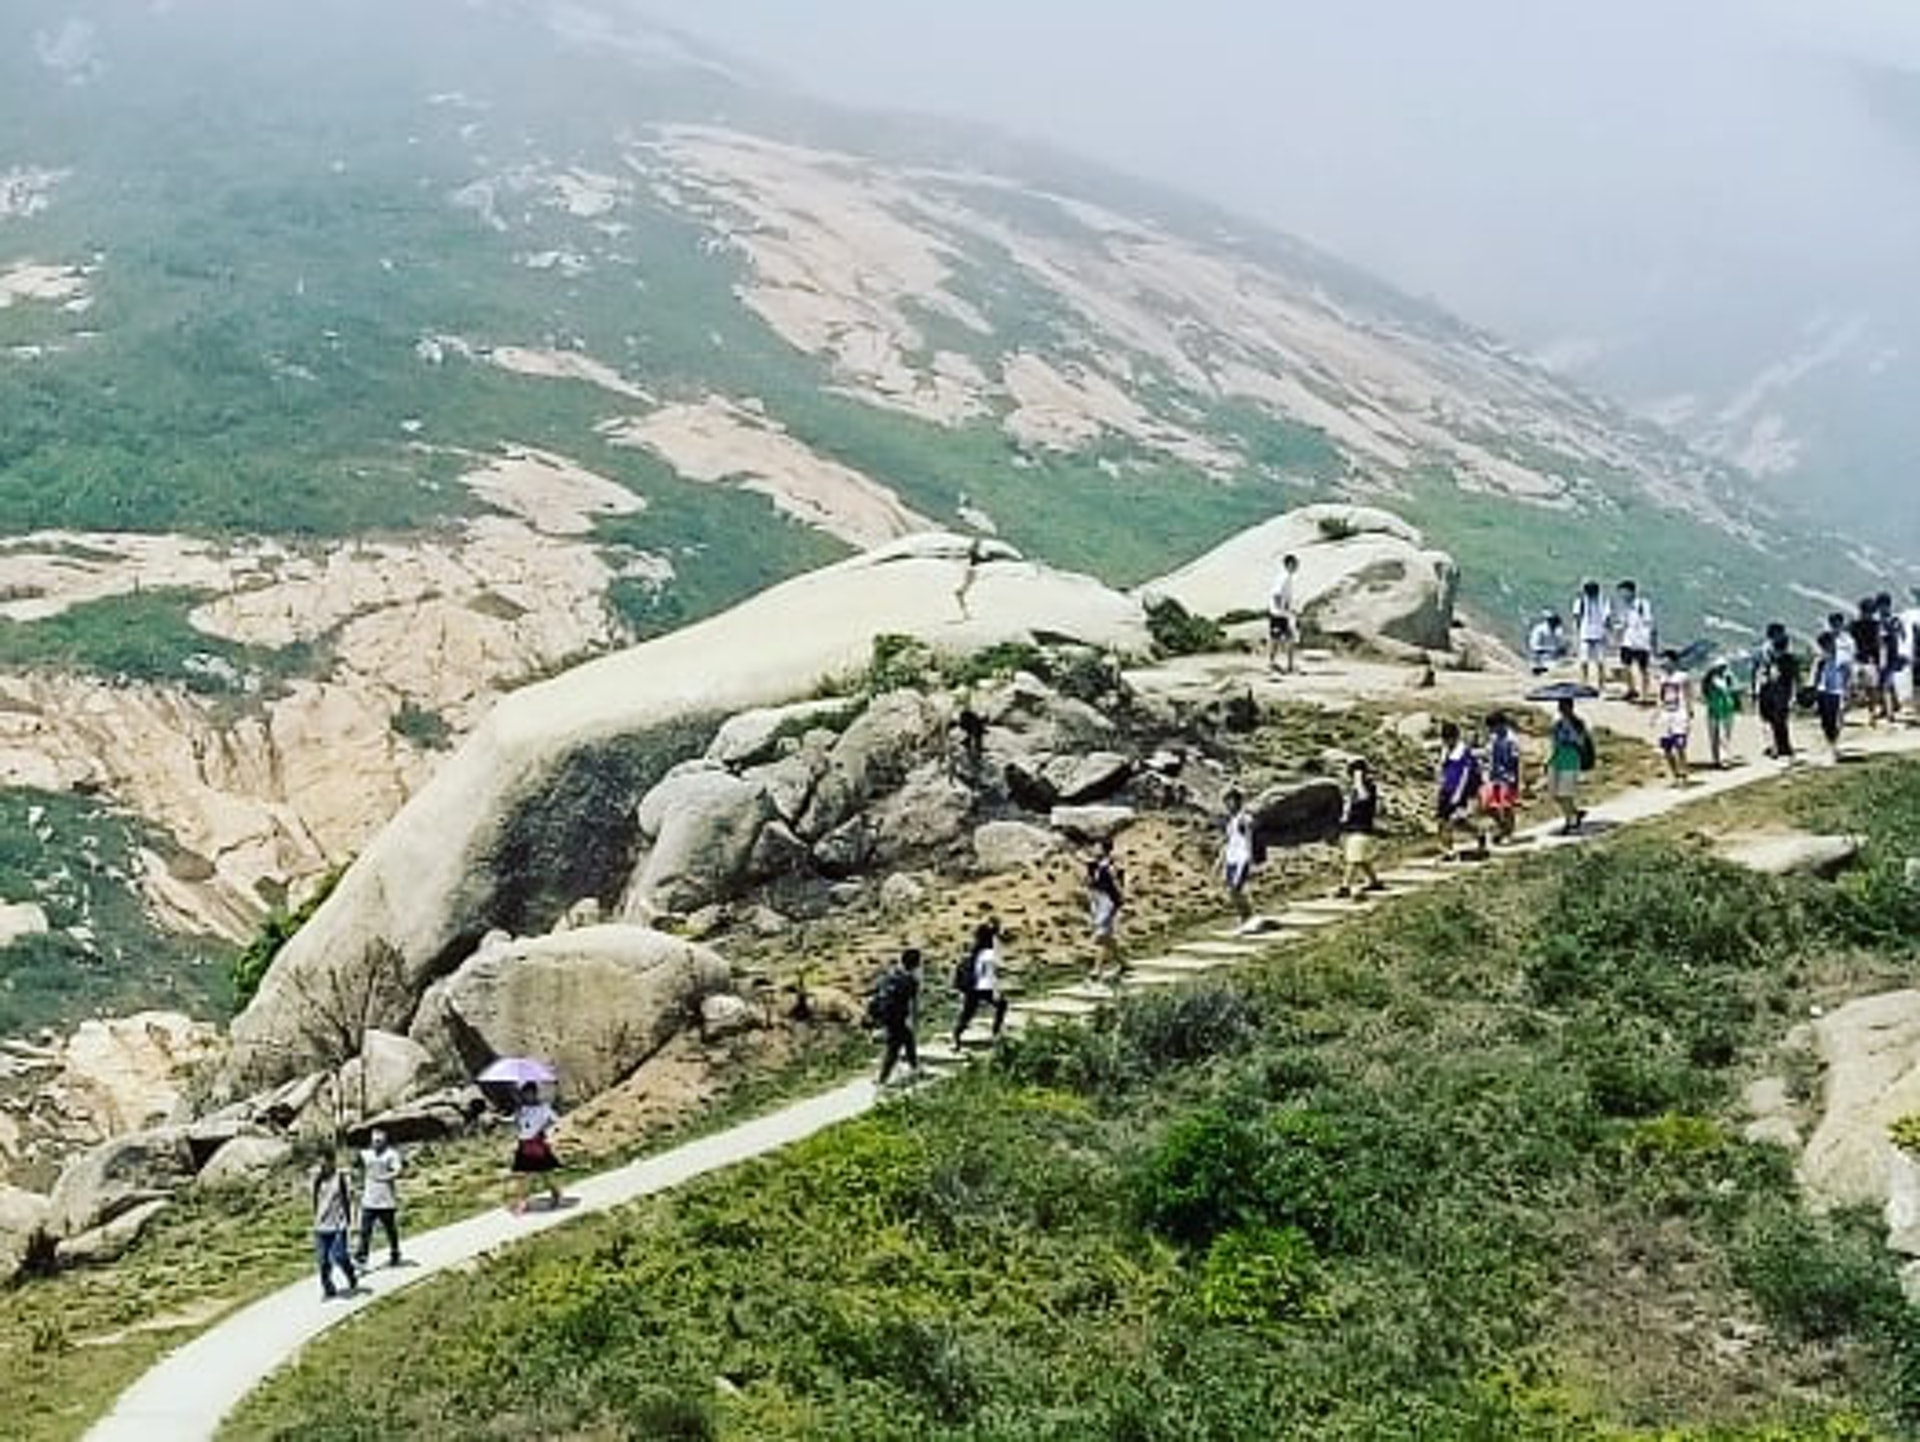 【打卡點6：靈龜石】巨大的龜形岩石，明顯可以見到靈龜正在面向山的高處，因此亦被稱為「靈龜上山」。走在旁邊的山徑，遠處看過去很震撼。（Instagram @michelle_hk）